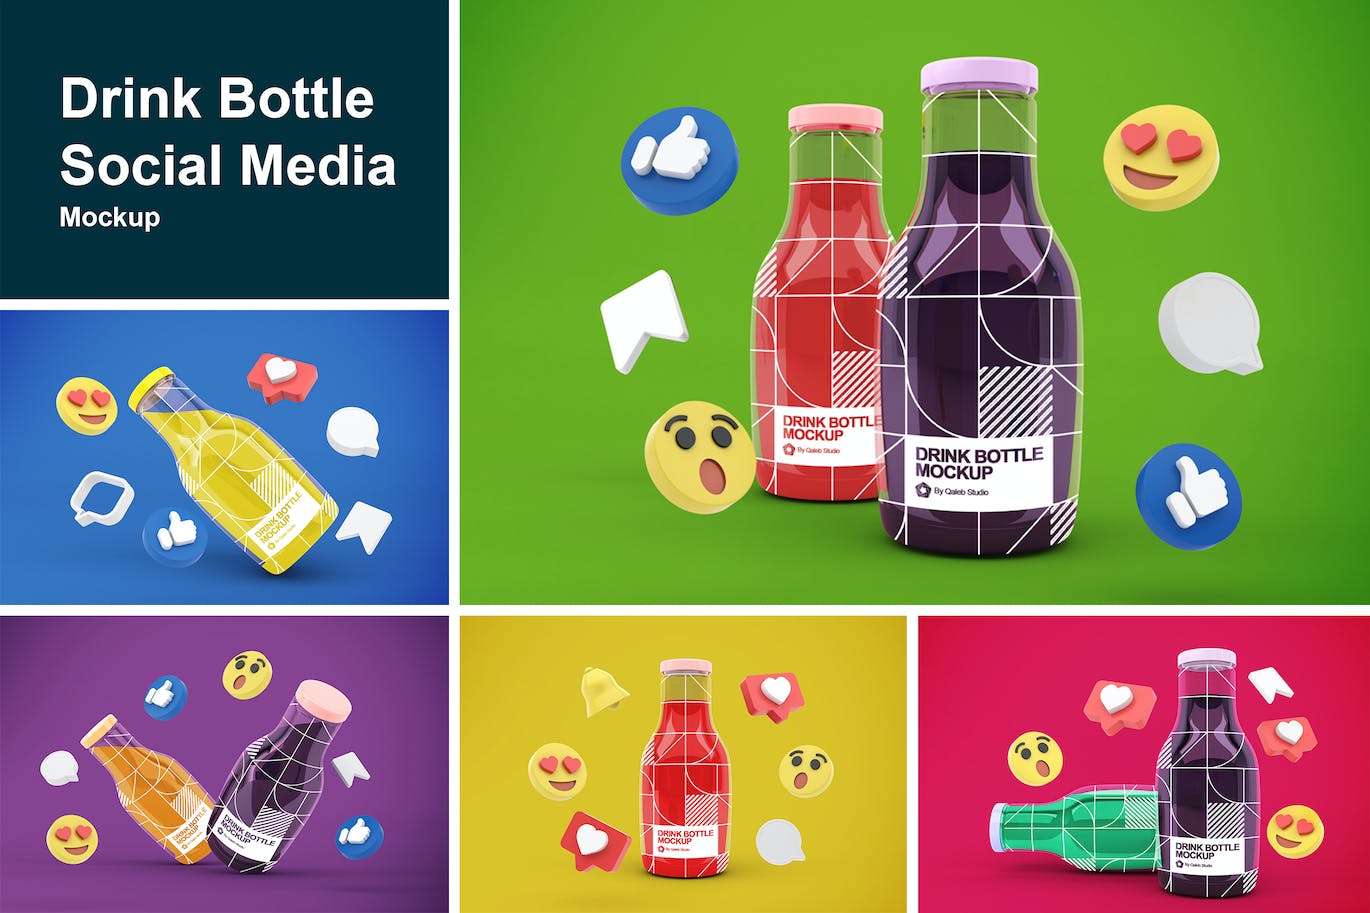 社交表情符号饮料瓶包装展示样机图 Drink Bottle Social Media 样机素材 第1张